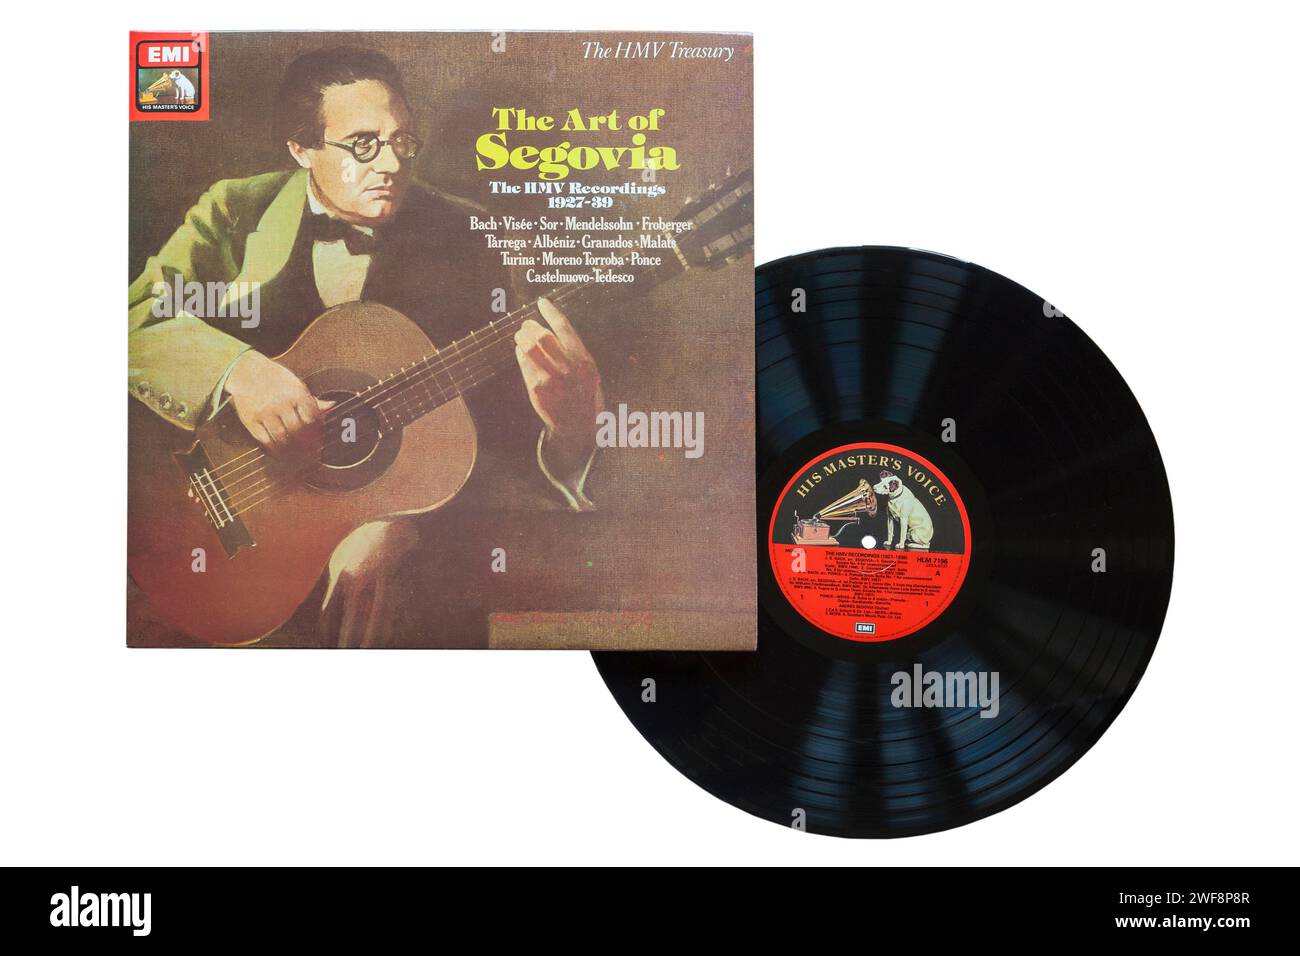 The Art of Segovia The HMV Recordings 1927-39 vinyle album LP Cover isolé sur fond blanc Banque D'Images